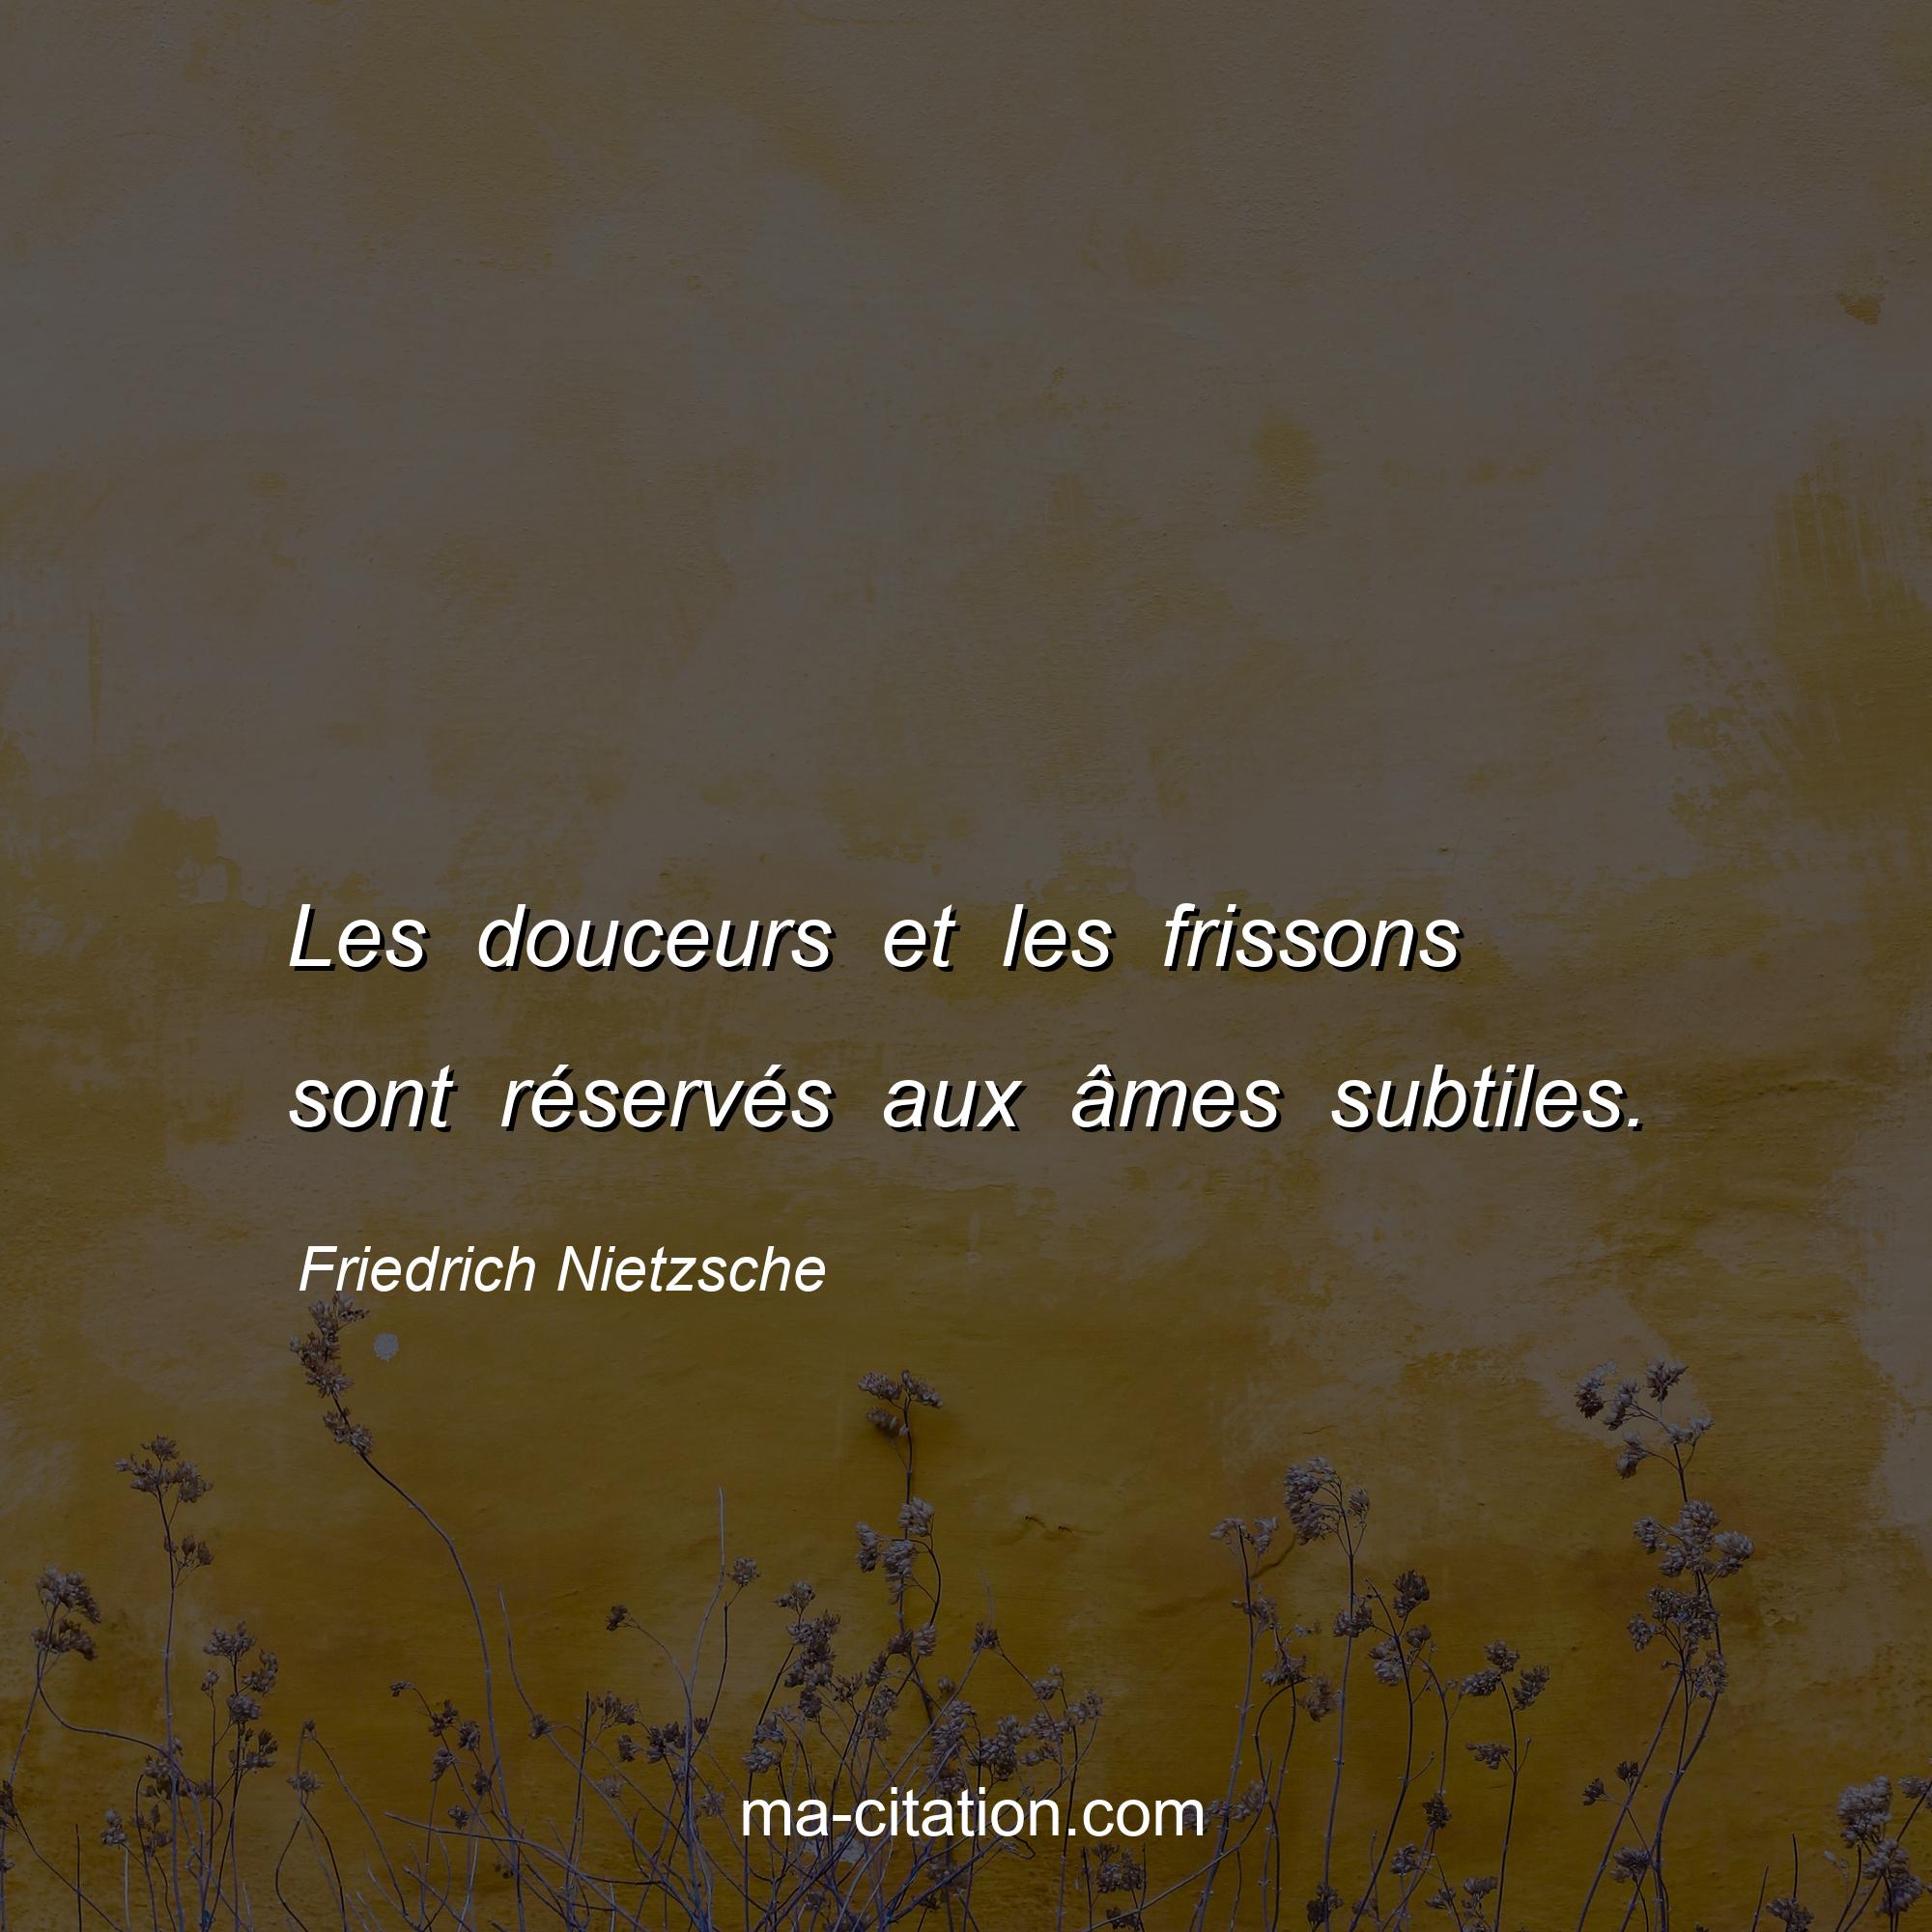 Friedrich Nietzsche : Les douceurs et les frissons sont réservés aux âmes subtiles.